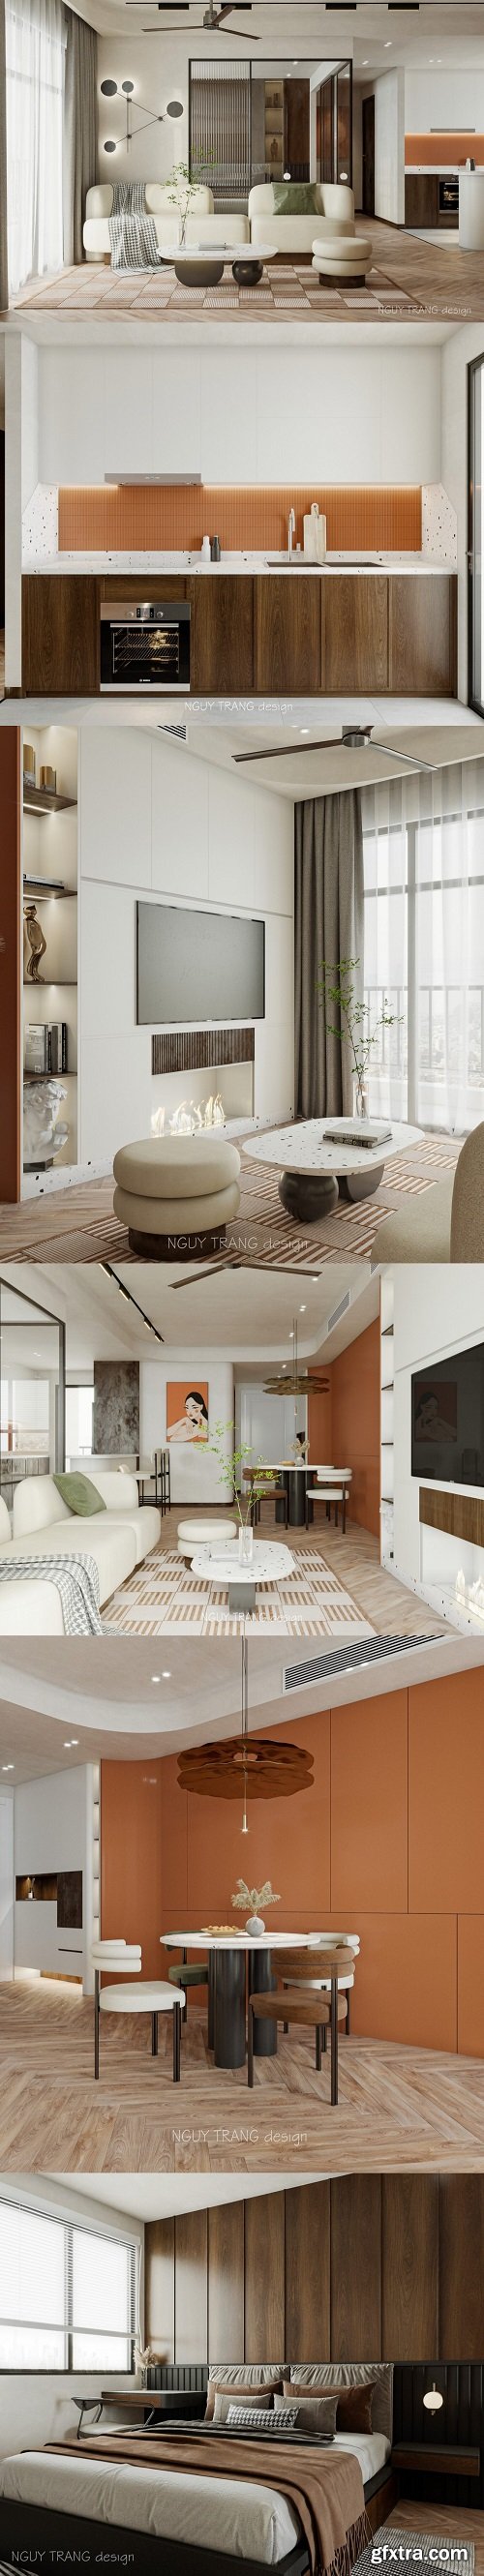 Apartment Interior By Nguy Trang